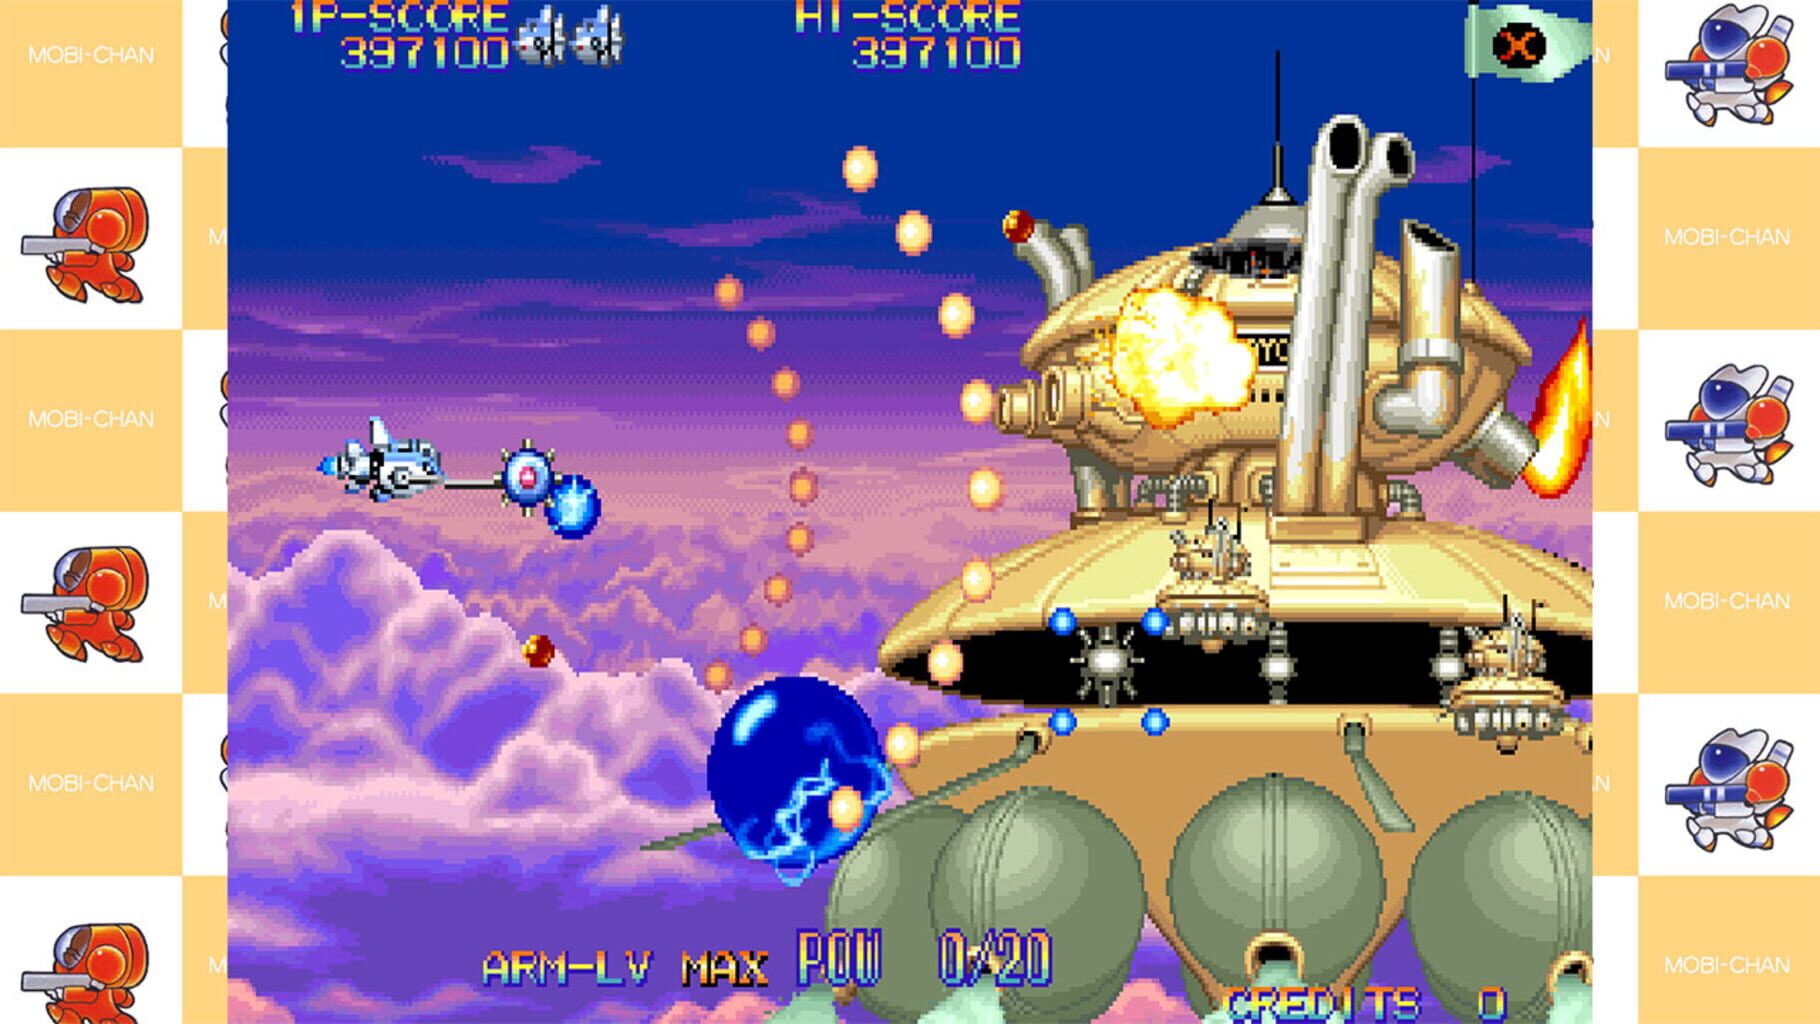 Capcom Arcade 2nd Stadium: Eco Fighters screenshot